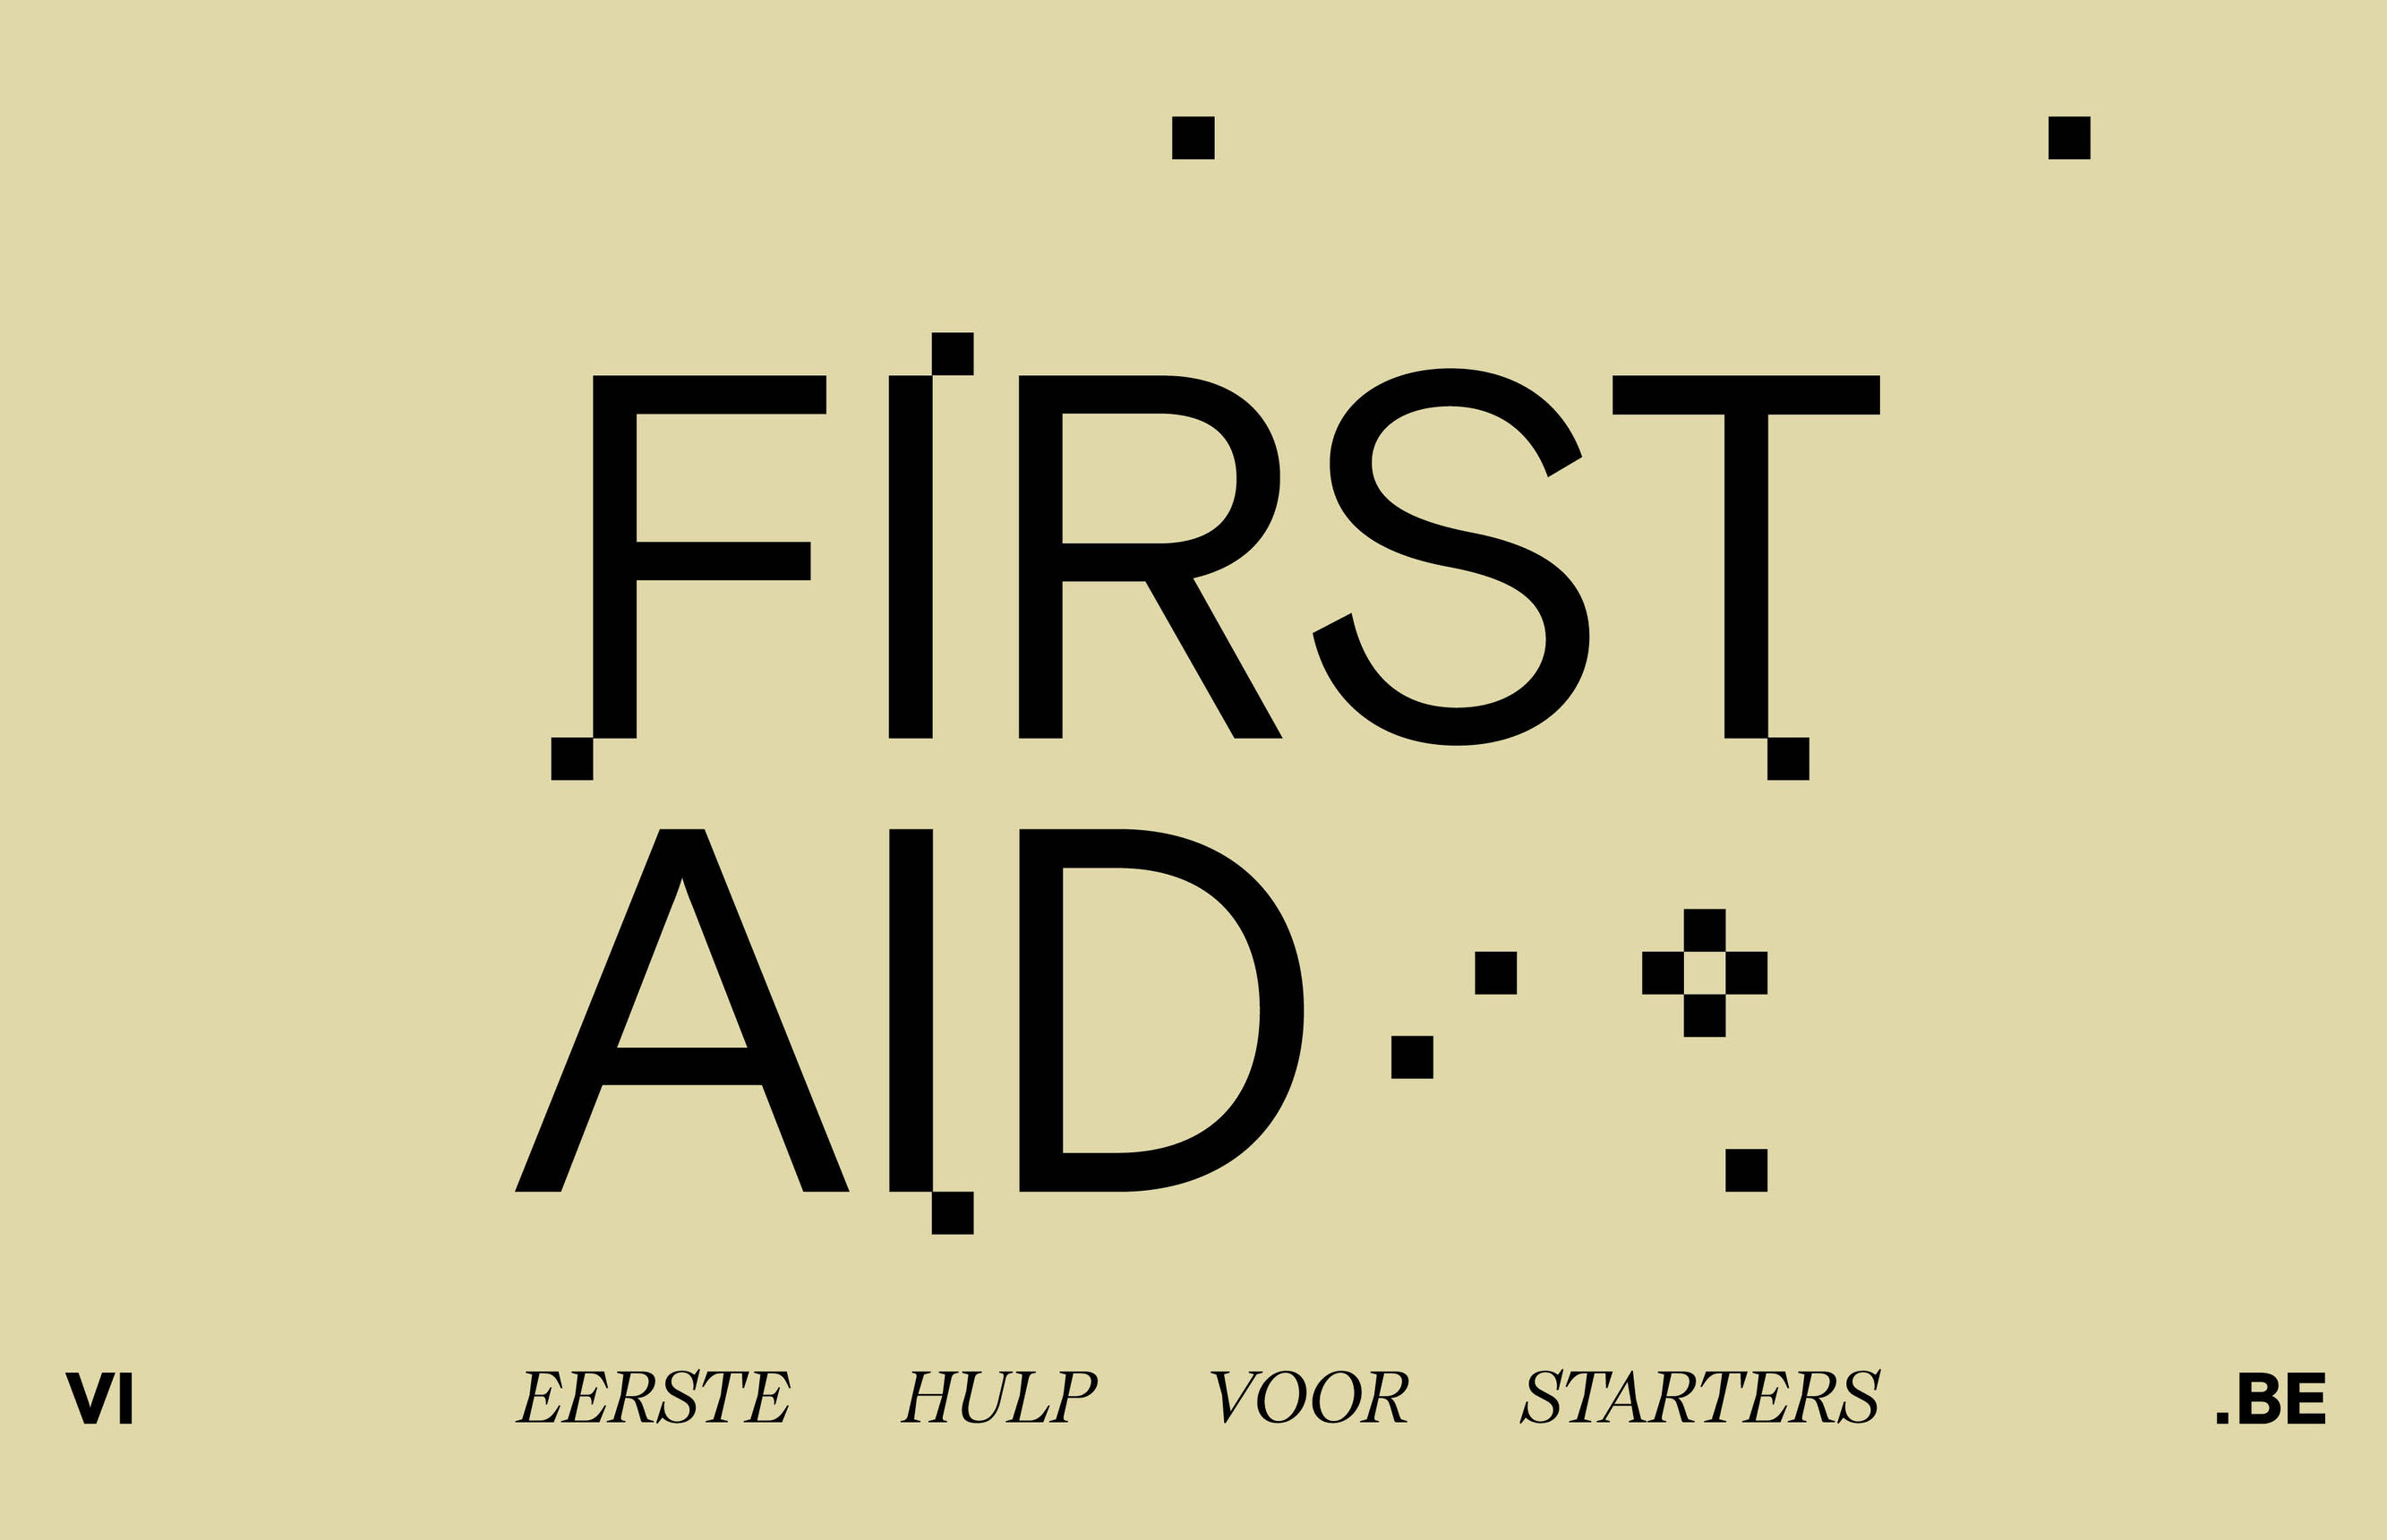 Met First Aid biedt VI.BE eerste hulp voor starters